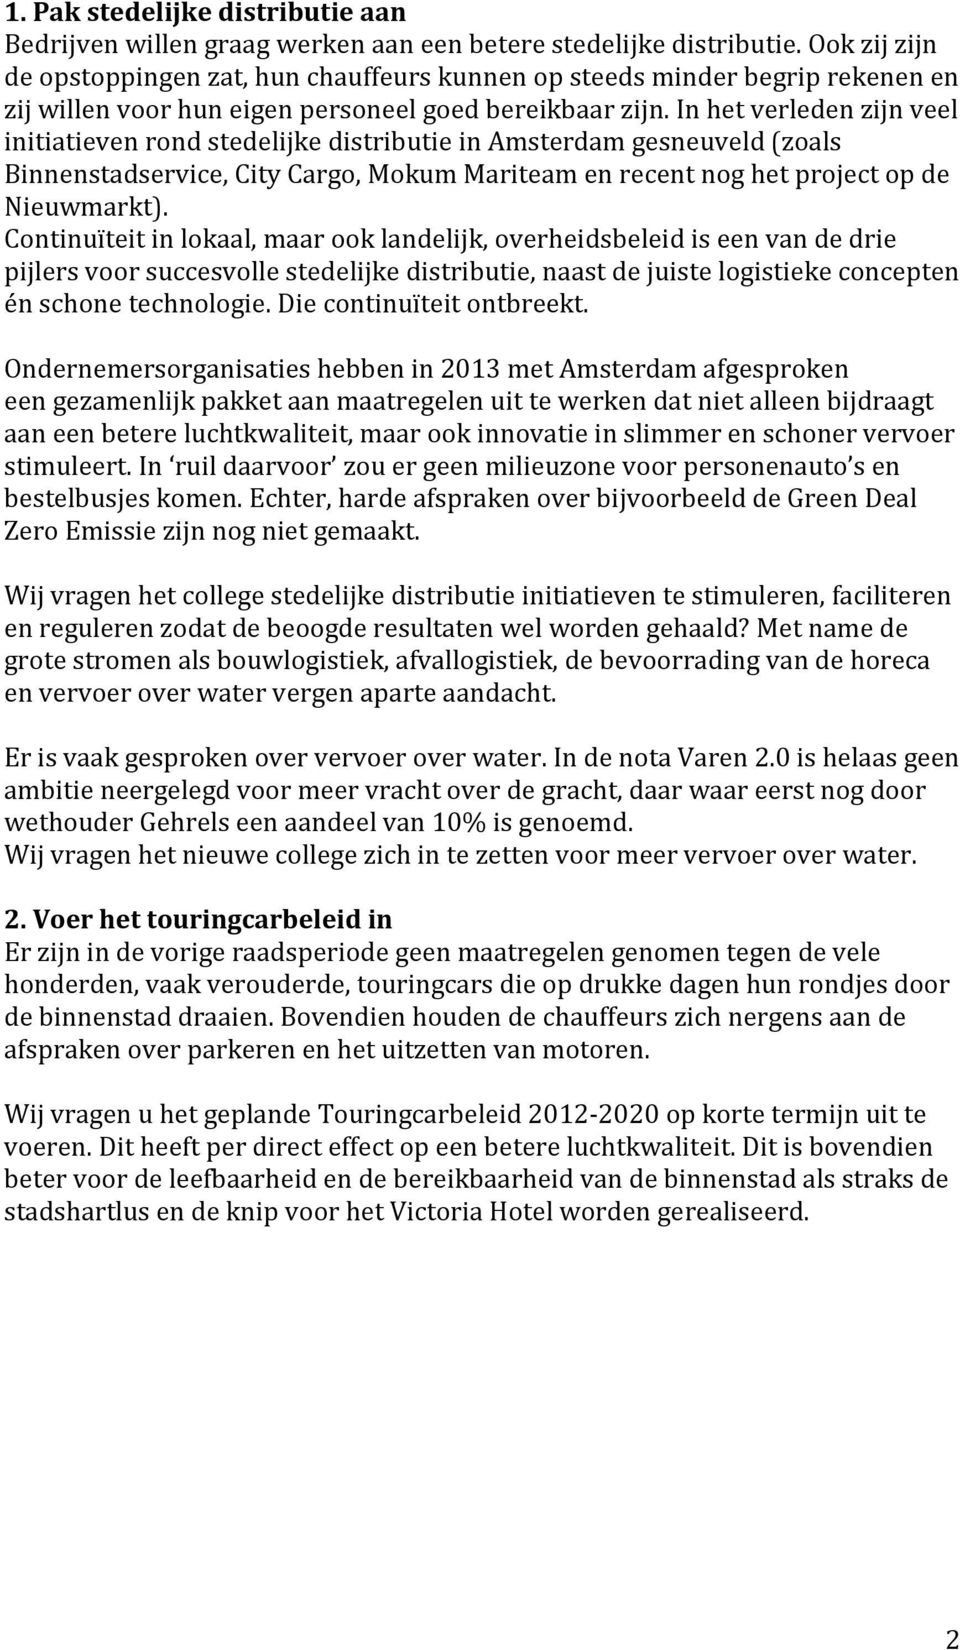 In het verleden zijn veel initiatieven rond stedelijke distributie in Amsterdam gesneuveld (zoals Binnenstadservice, City Cargo, Mokum Mariteam en recent nog het project op de Nieuwmarkt).